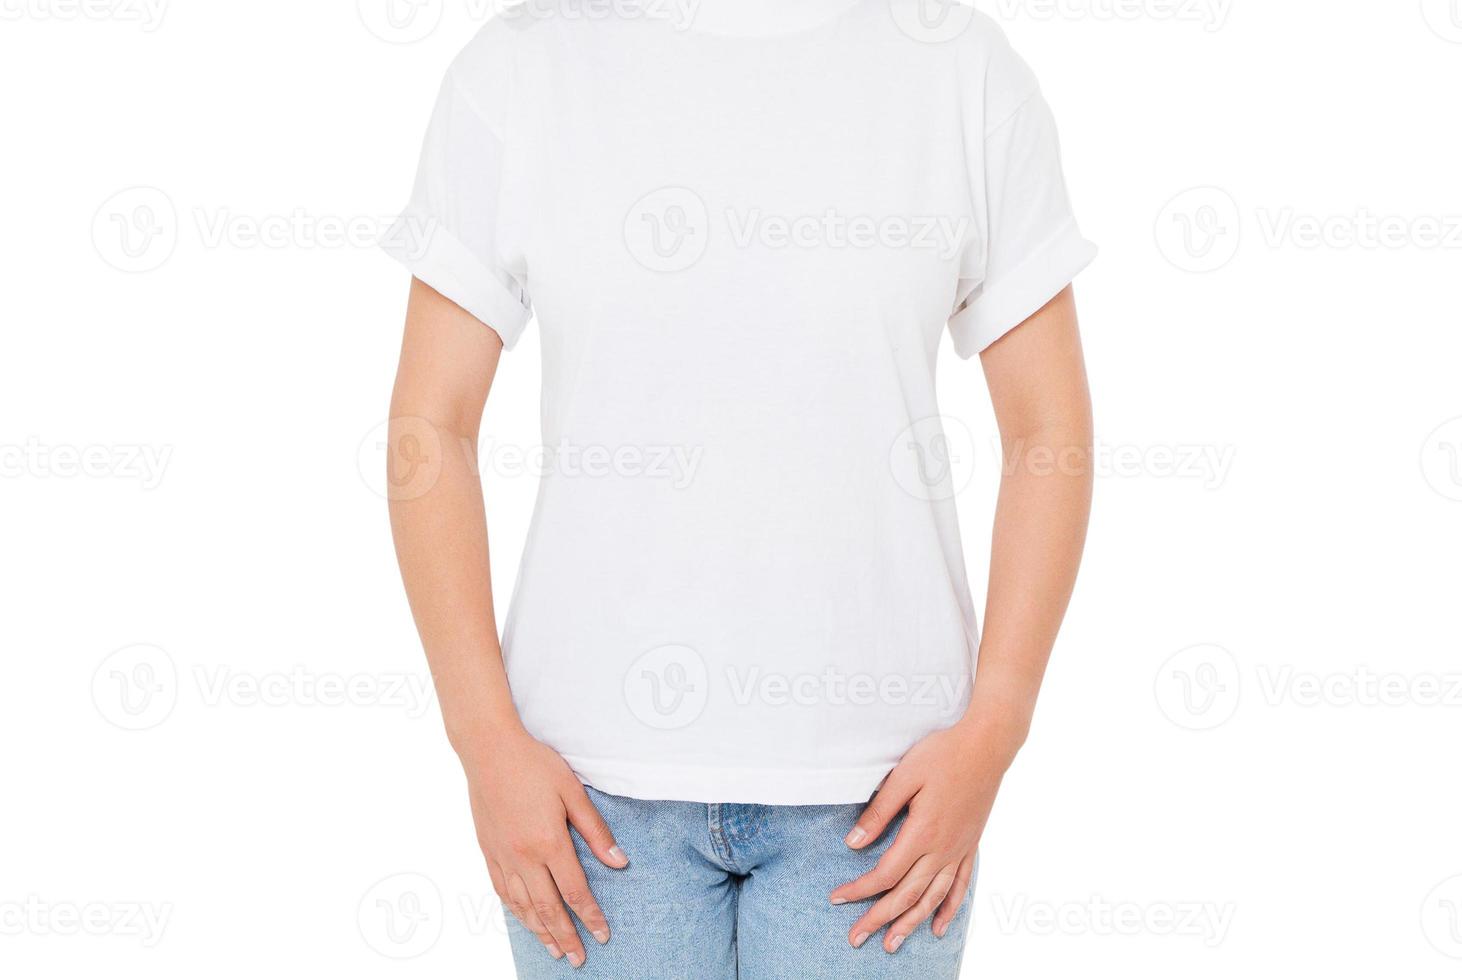 mulher asiática em t-shirt branca isolada - menina em t-shirt elegante close-up foto